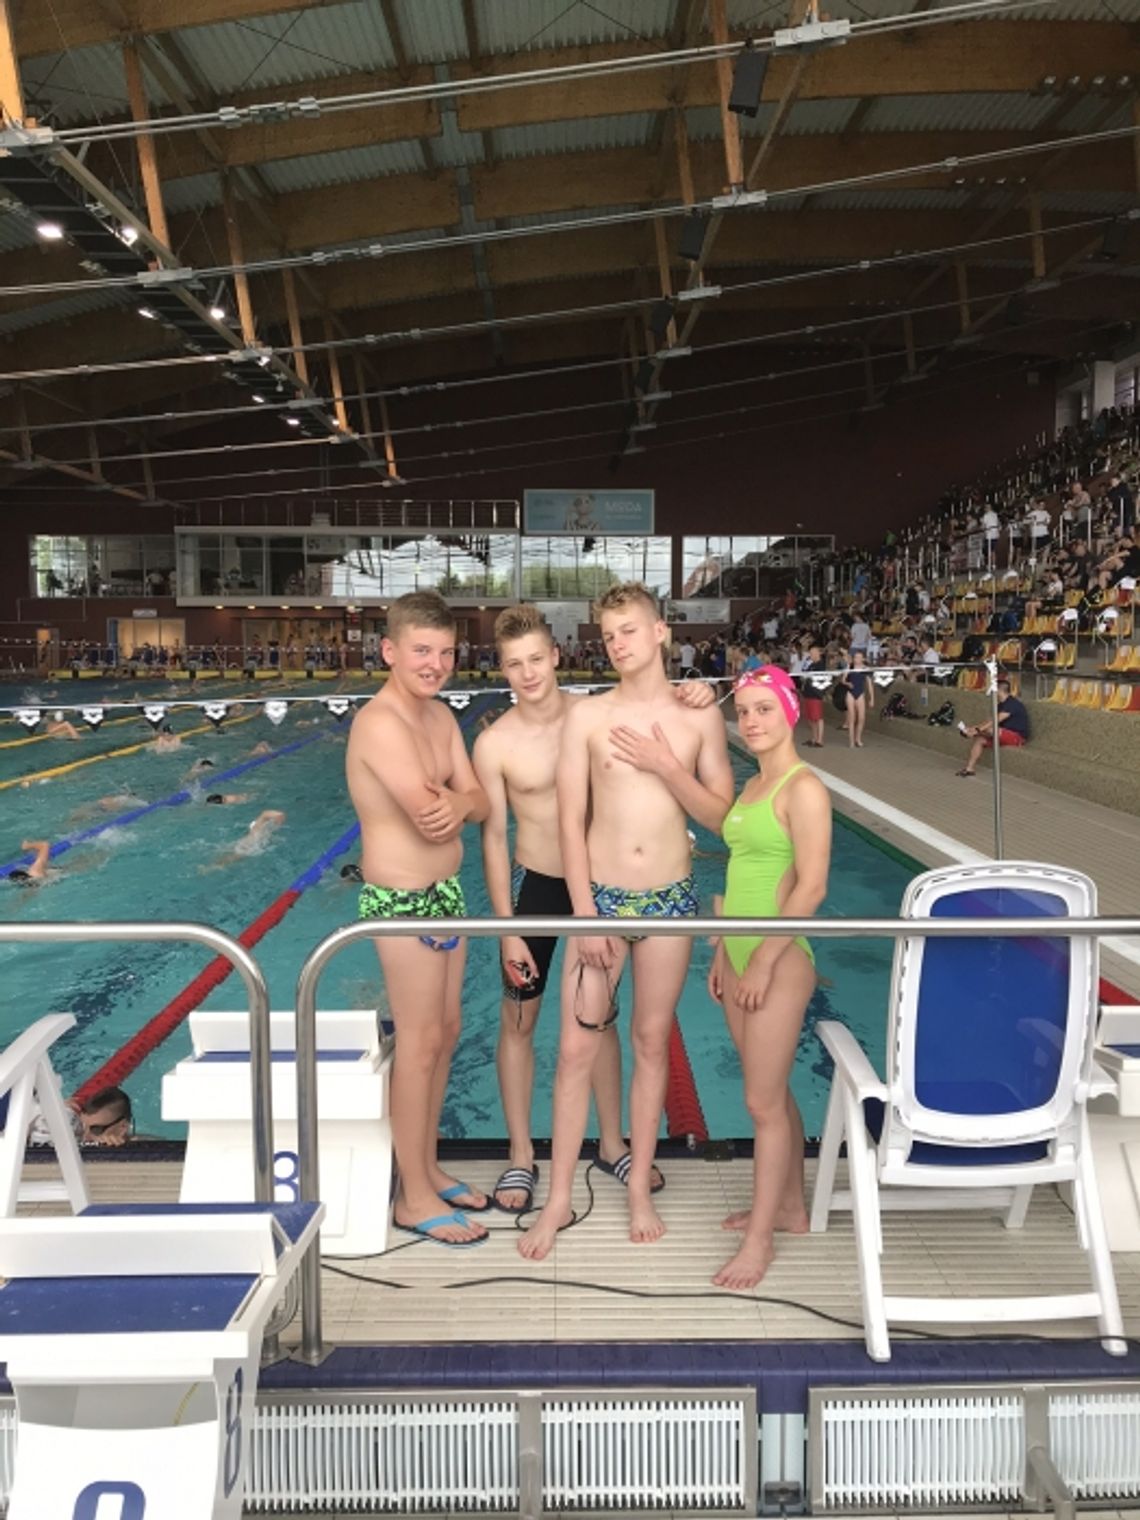 Mistrzostwa Polski Juniorów Młodszych 14 – lat w Pływaniu